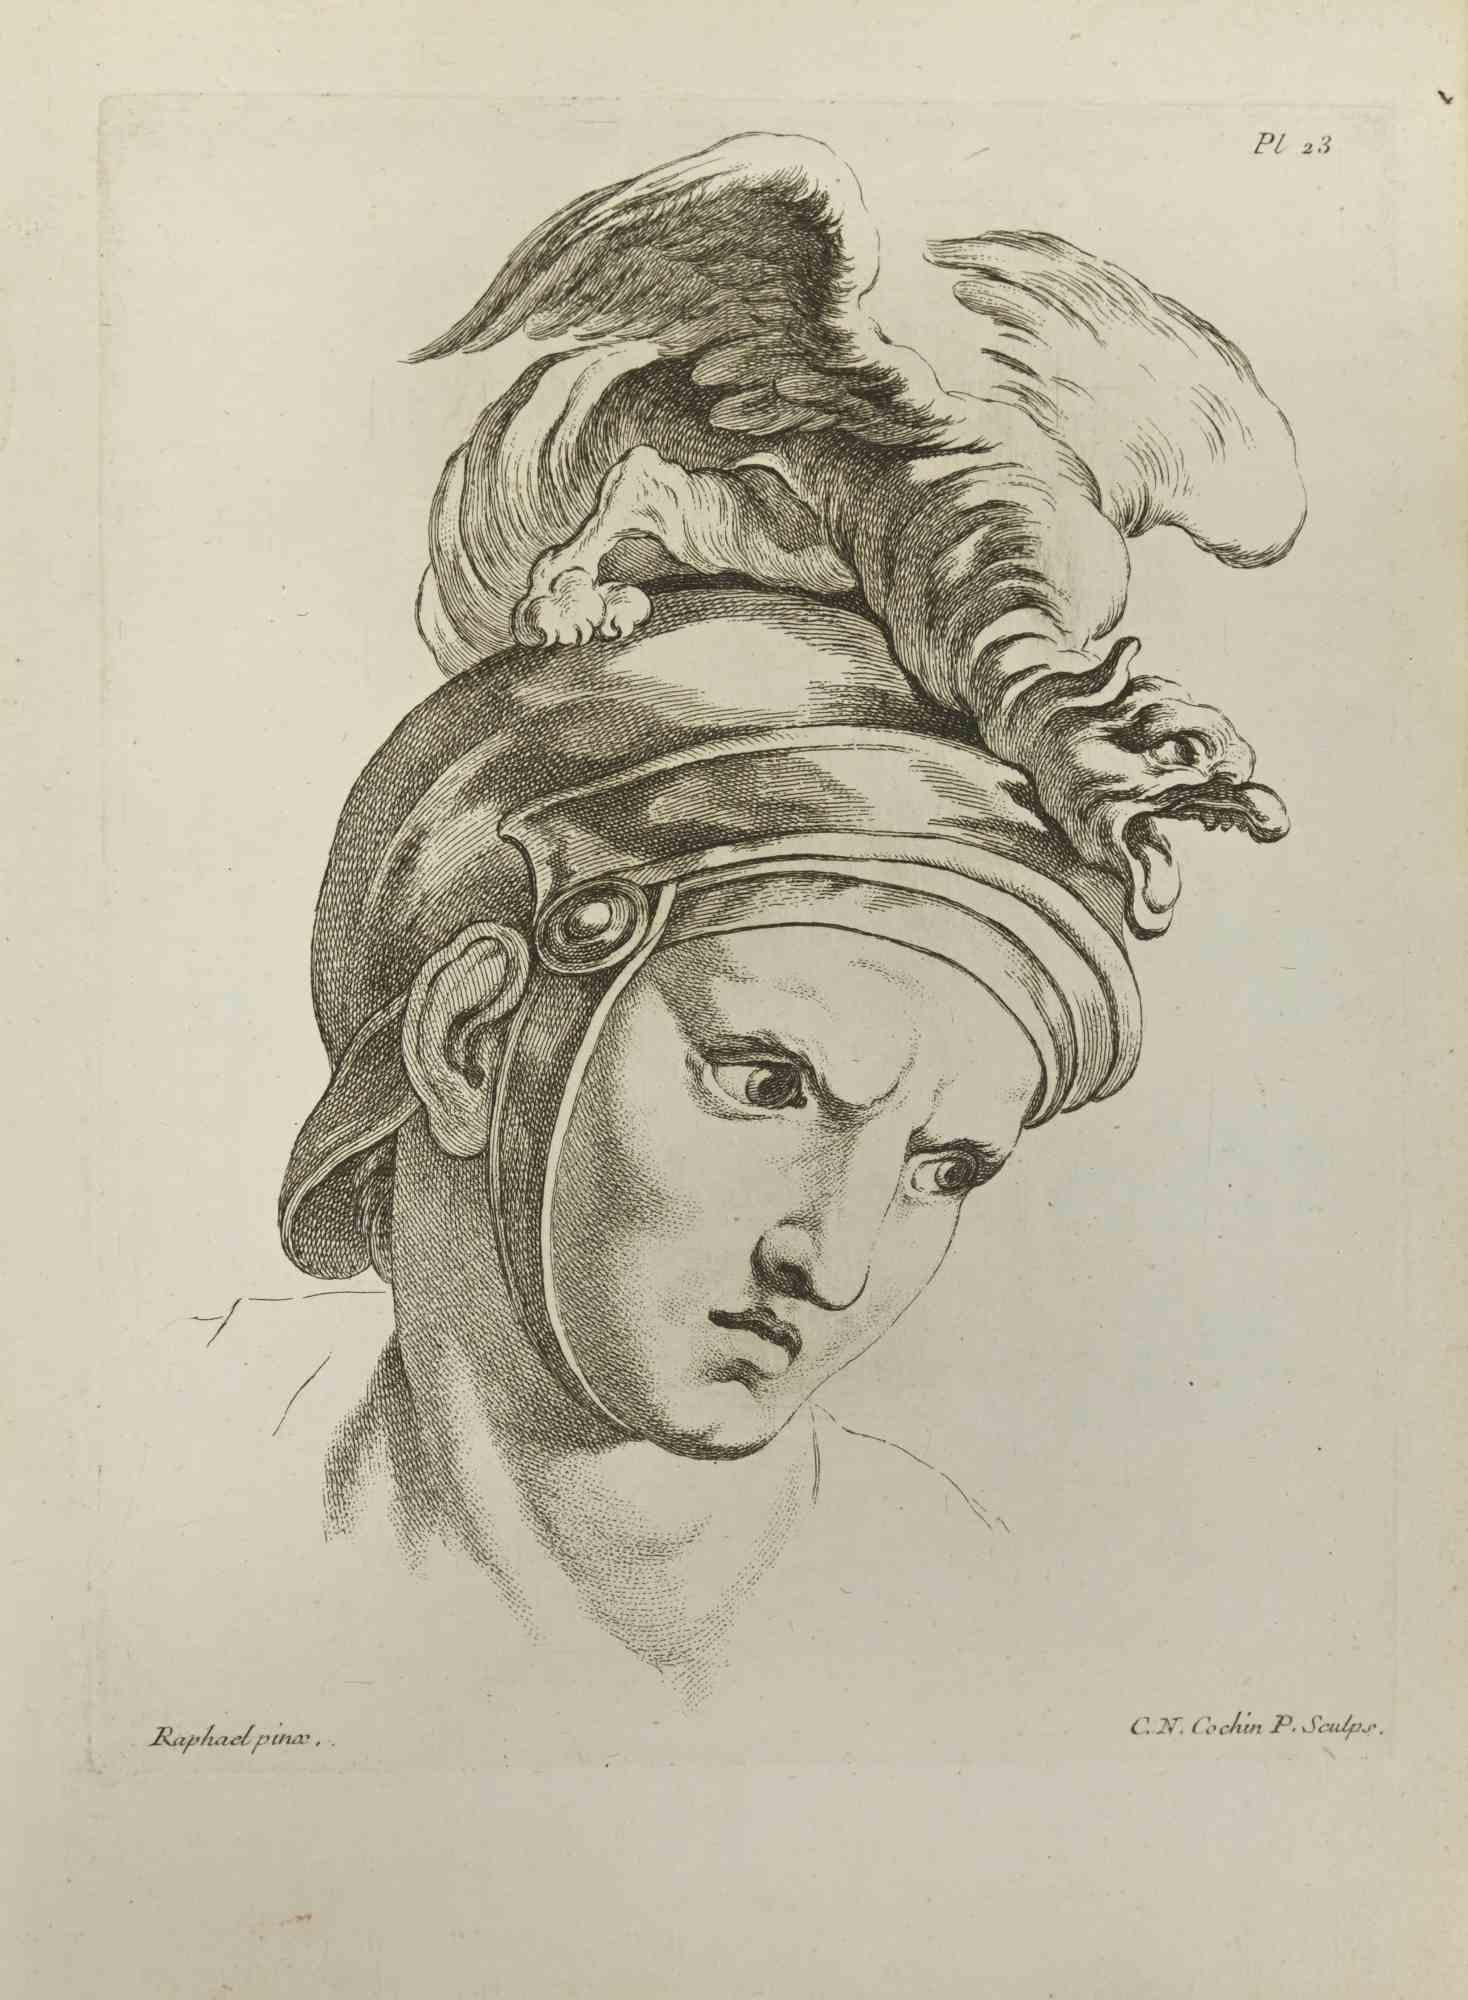 Das Porträt nach Raphael ist eine Radierung von Nicholas Cochin aus dem Jahr 1755.

In der Platte signiert.

Guter Zustand mit Stockflecken und Falten.

Das Kunstwerk wird mit sicheren Strichen dargestellt.

Die Radierung wurde für die